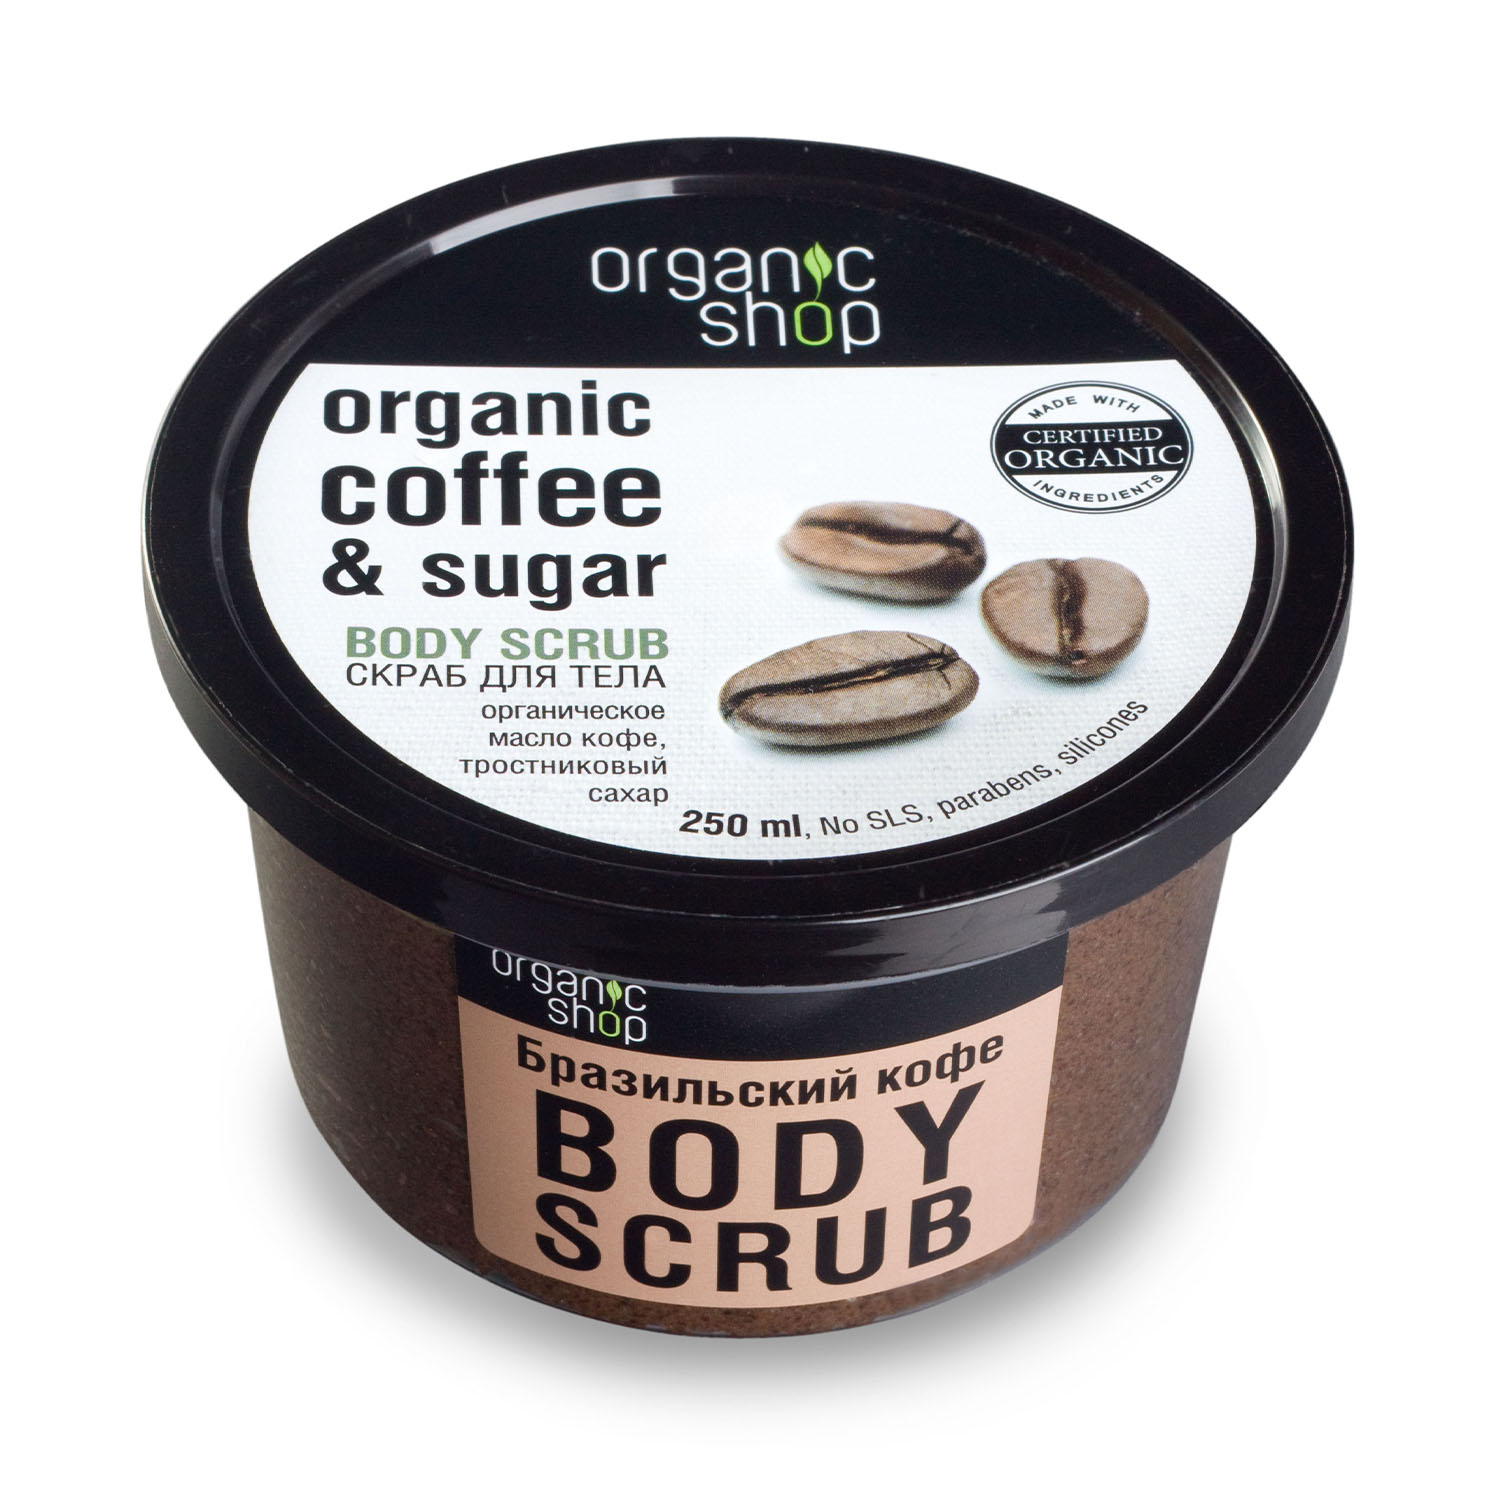 Organic Shop Скраб для тела Бразильский кофе, 250 мл (Organic Shop, Классика) скраб для тела organic shop бразильский кофе 250мл х 2шт